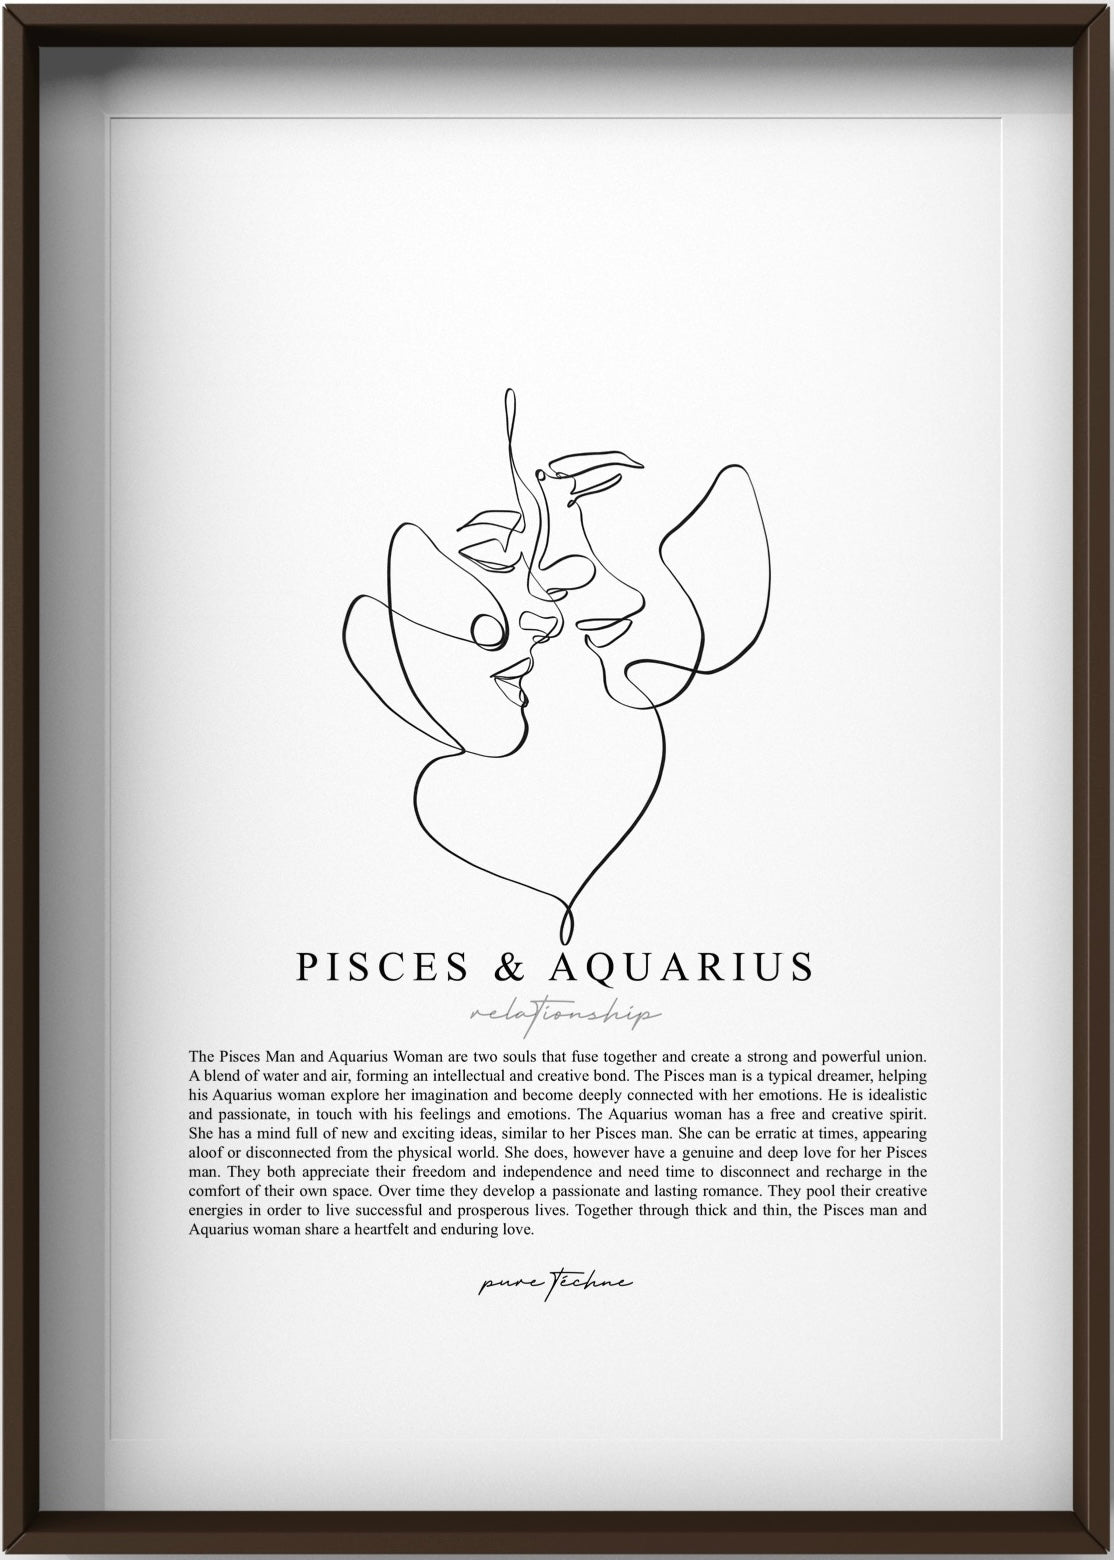 Pisces Man & Aquarius Woman